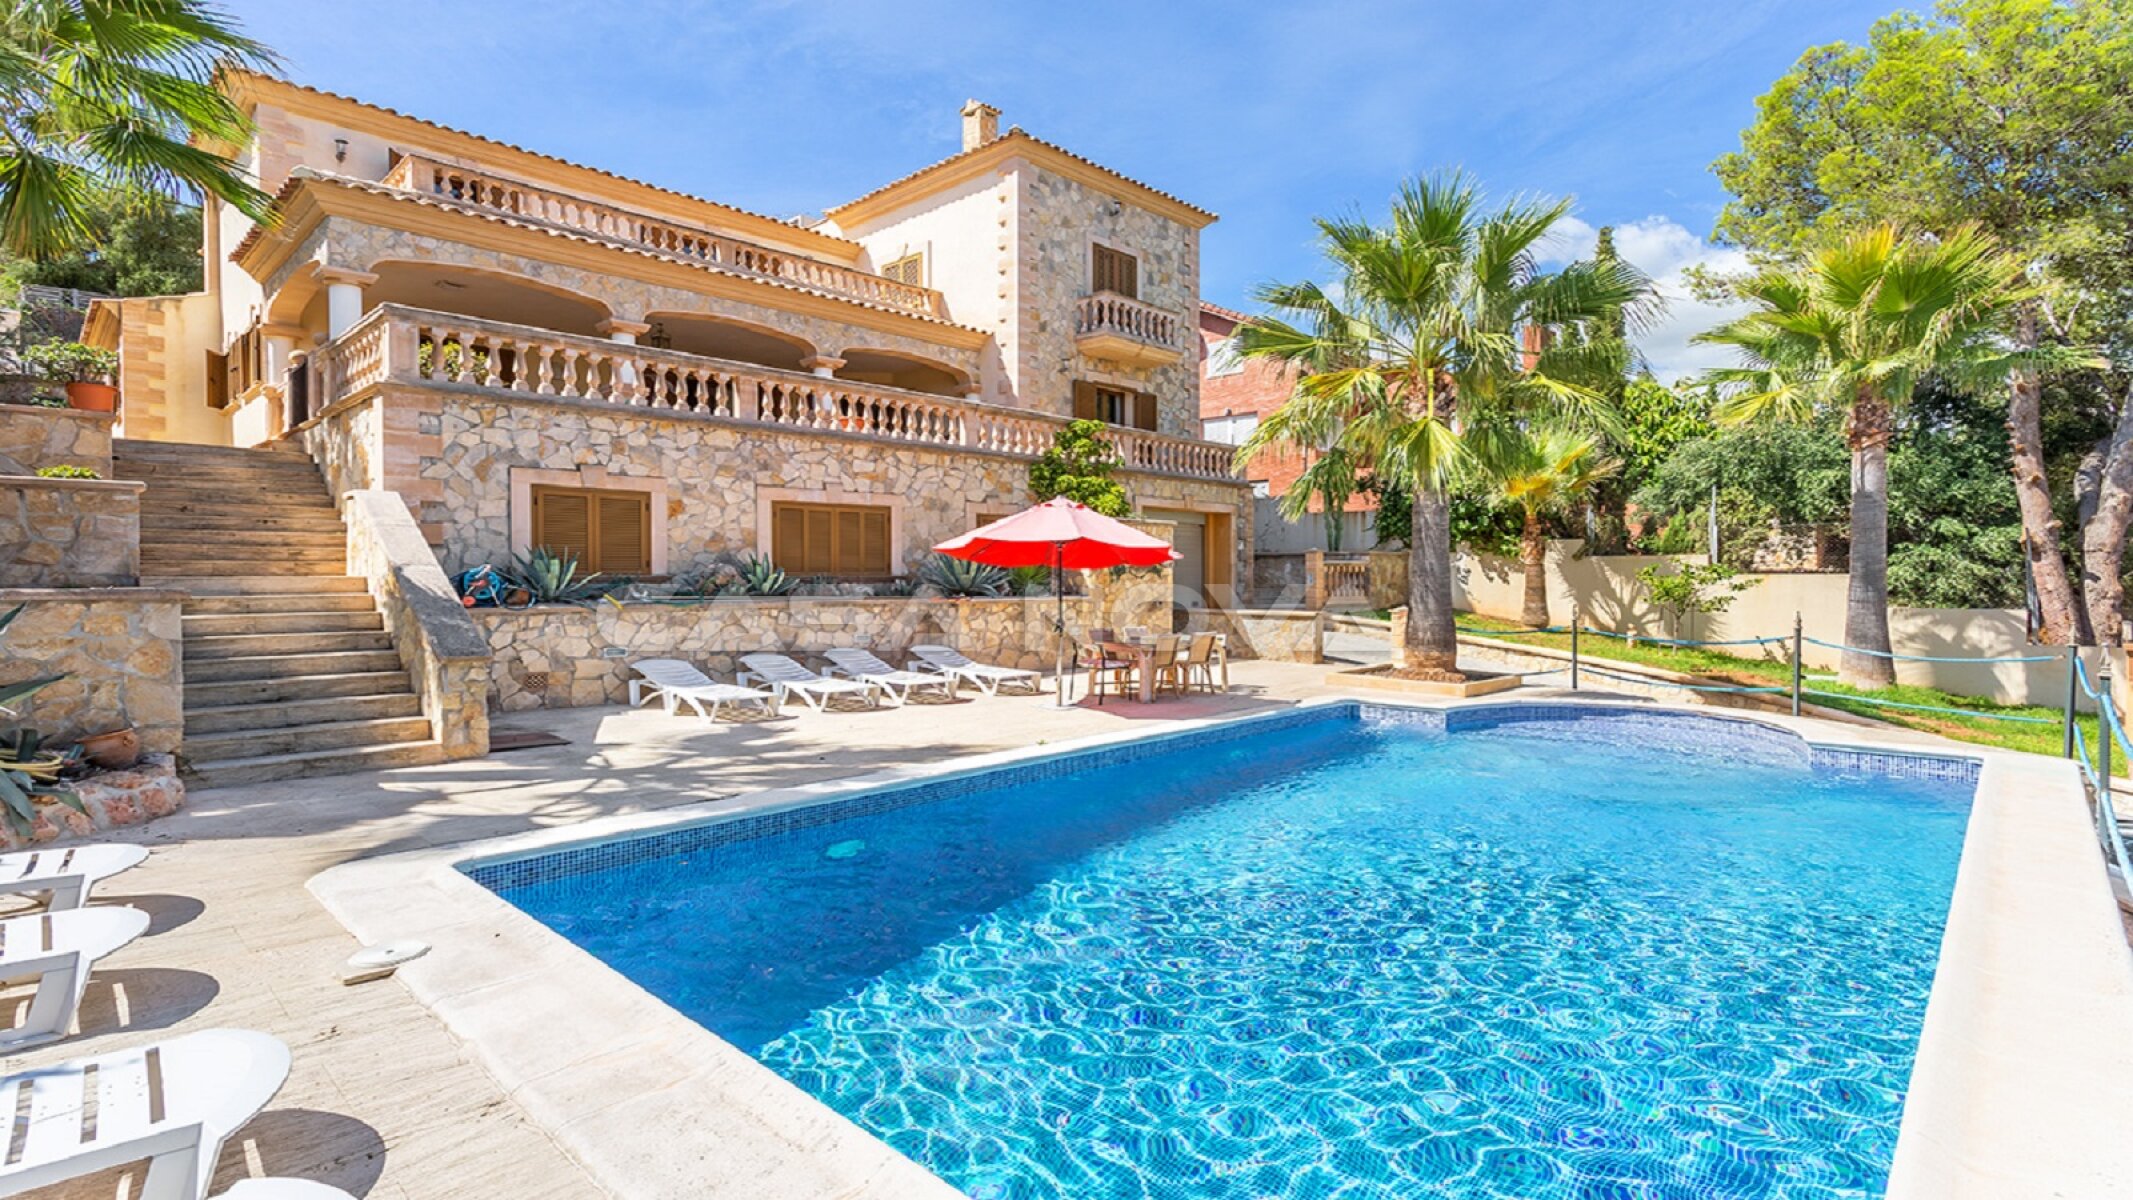 Mediterrane Villa mit Pool in zentraler Lage